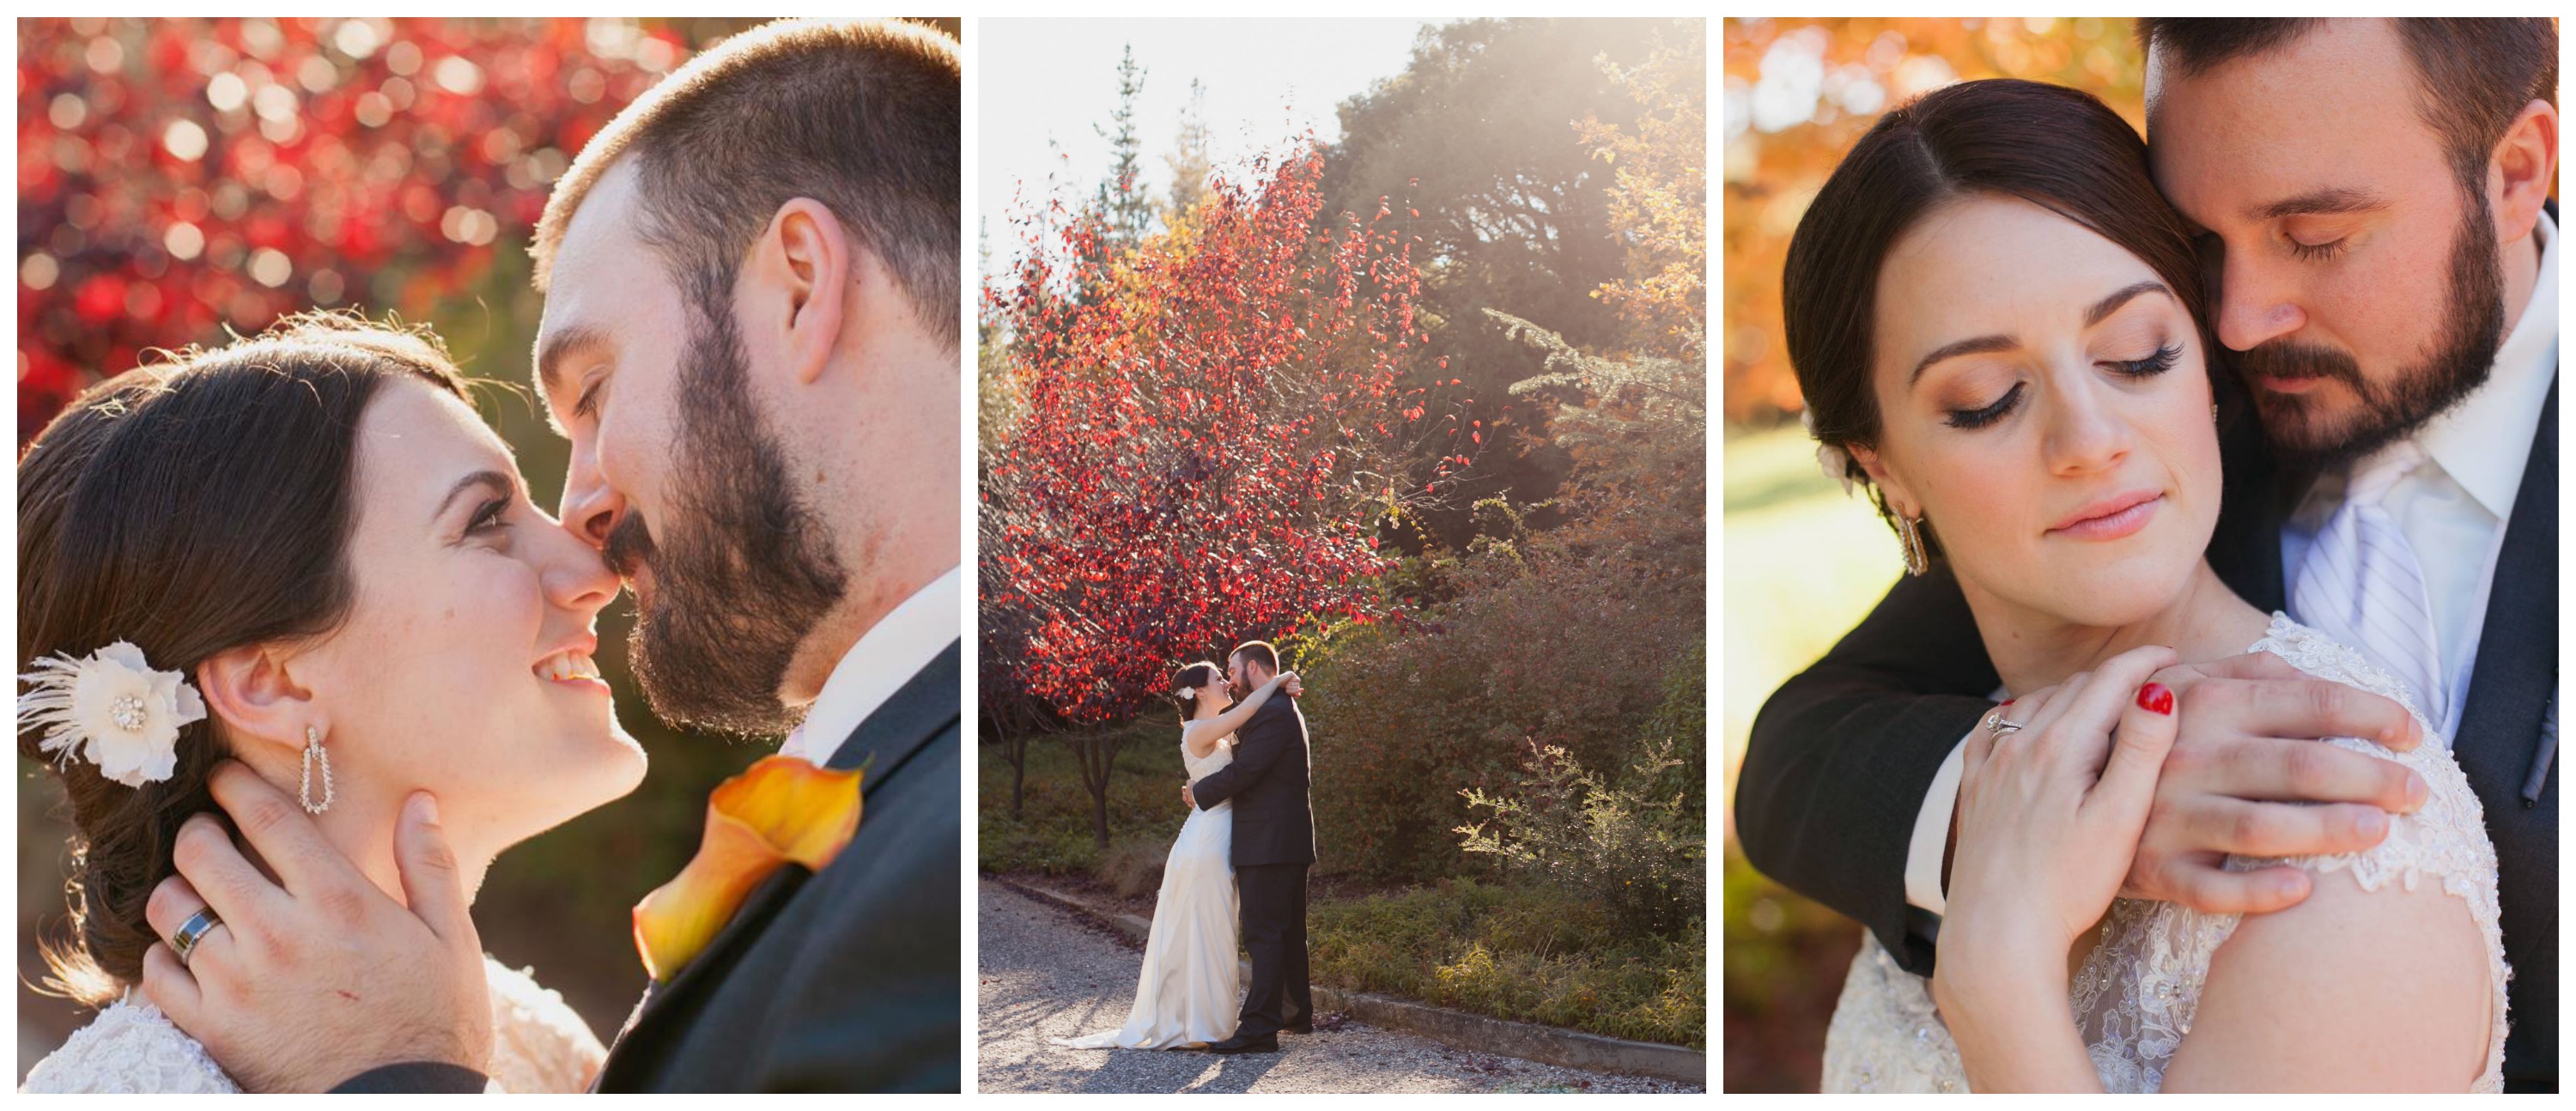 Autumn wedding photos